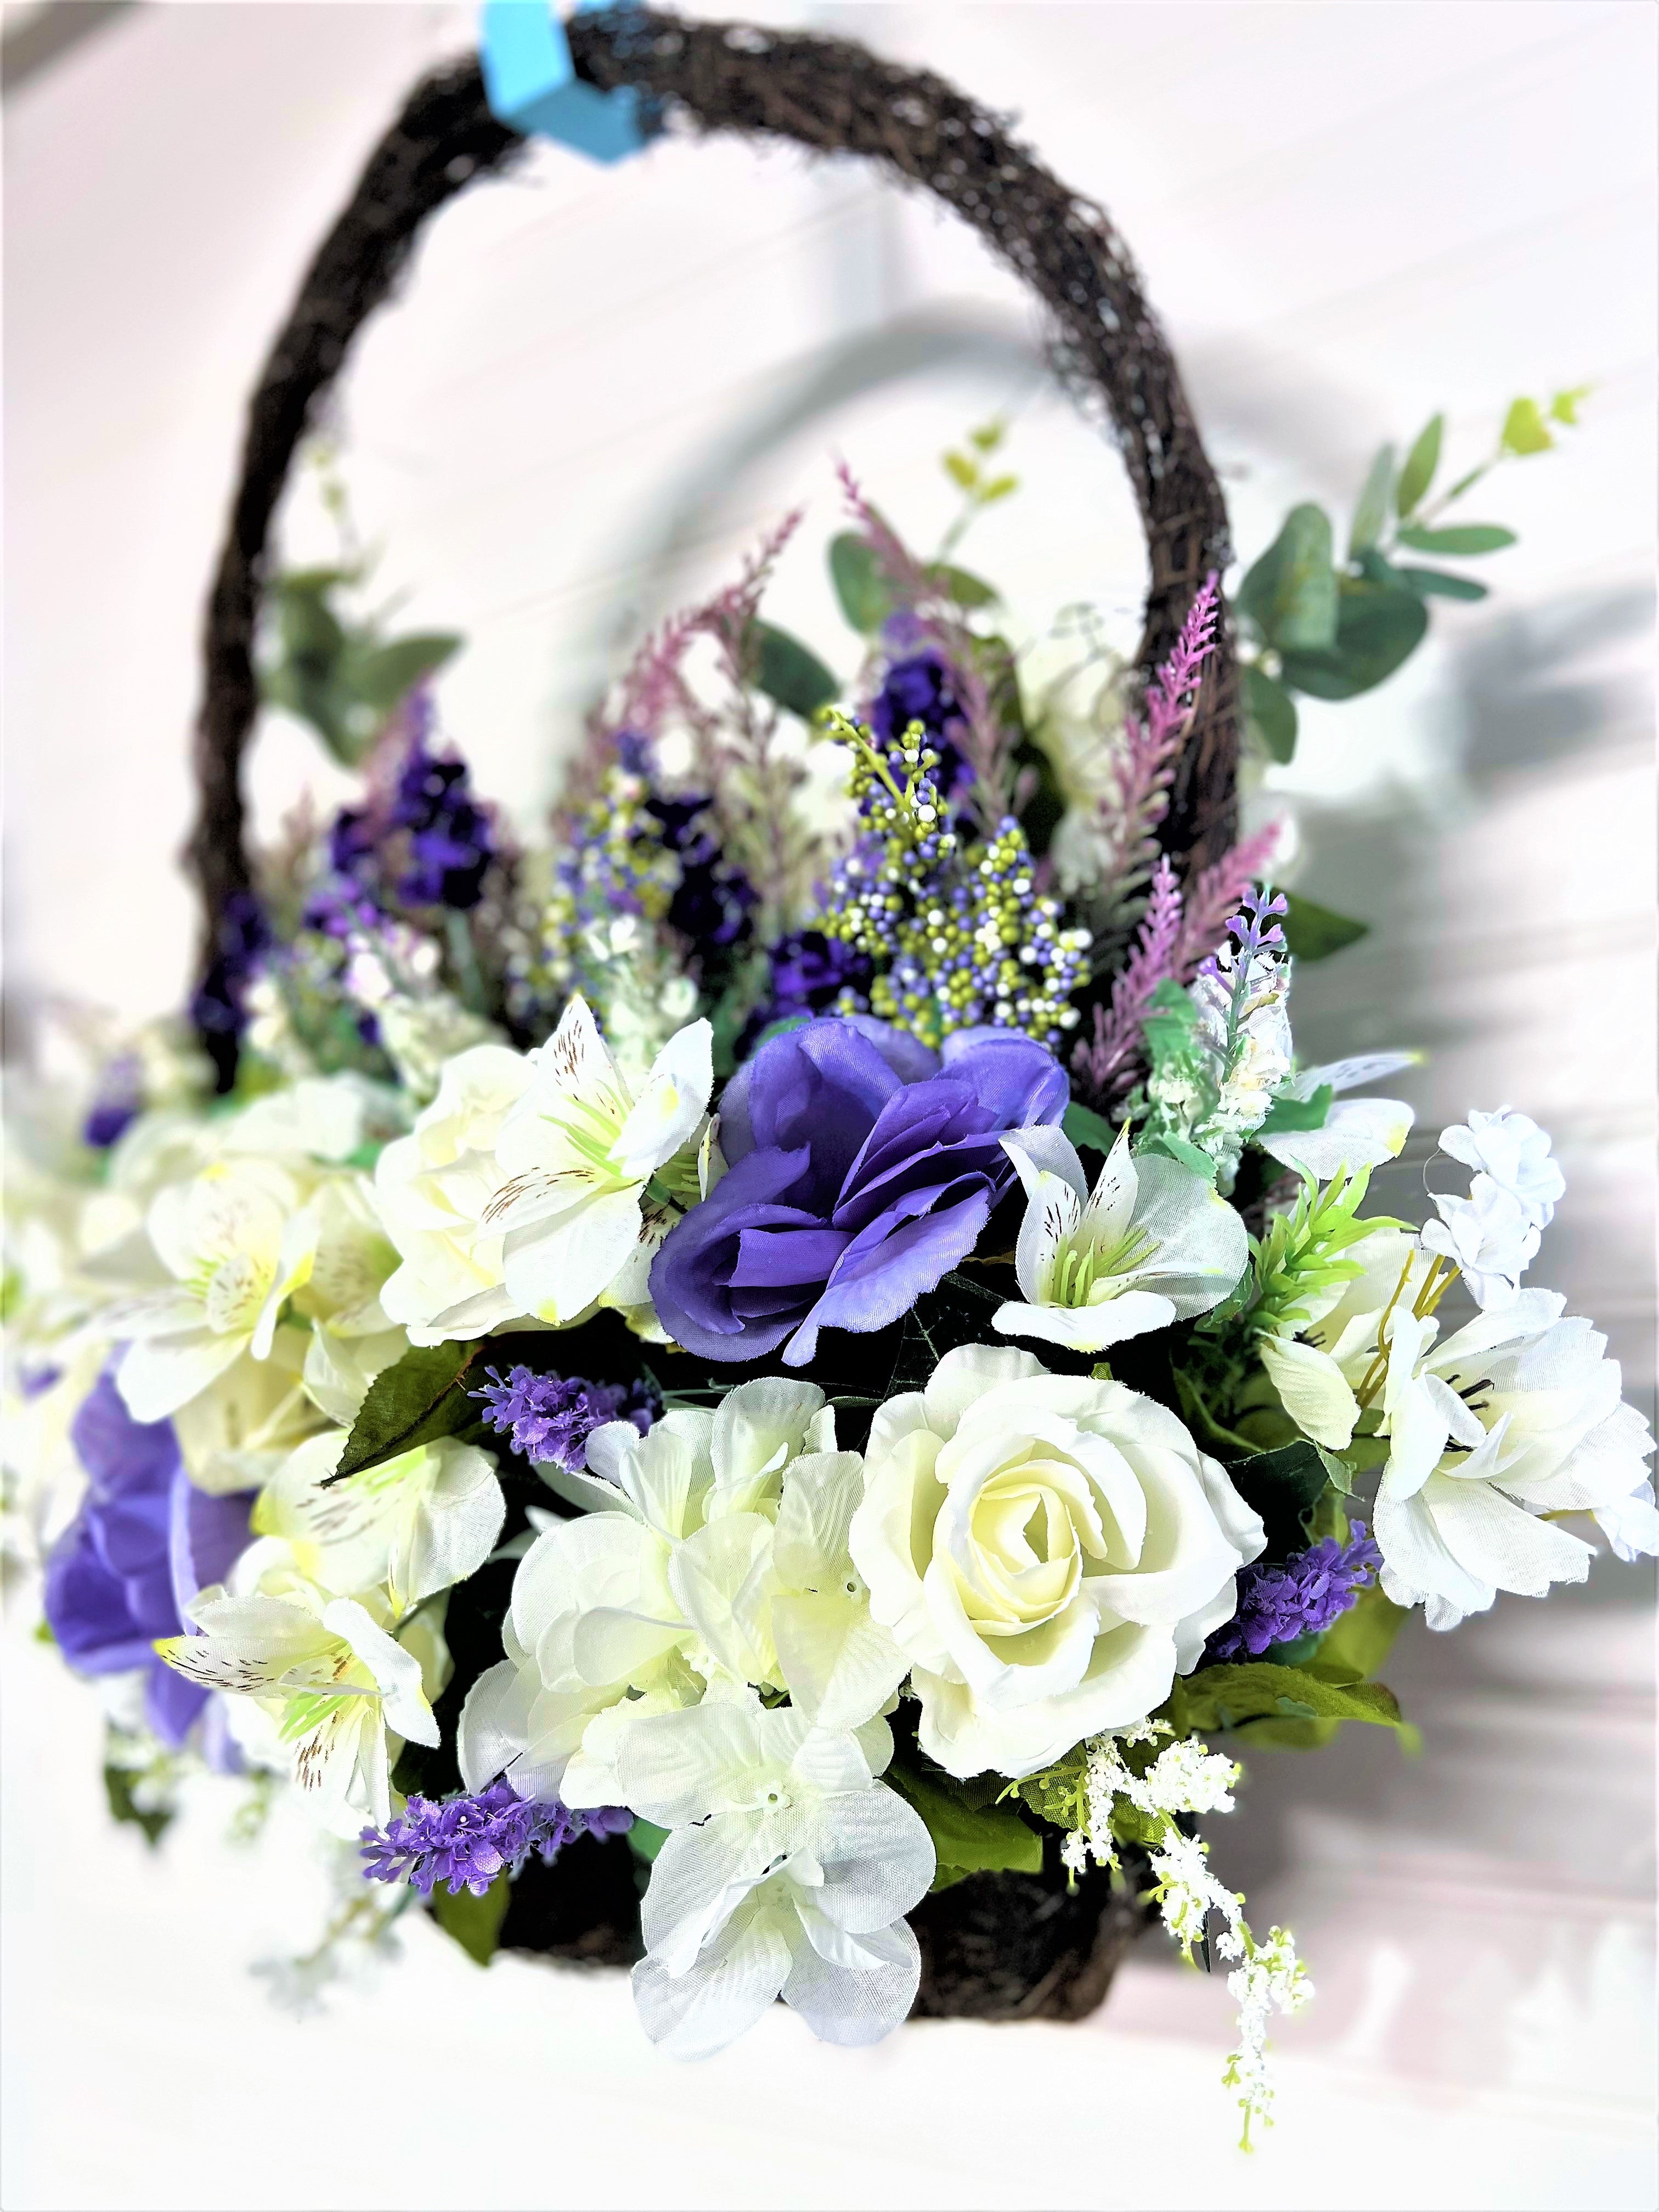 Spring/Summer flower basket, 22"LX7" depth